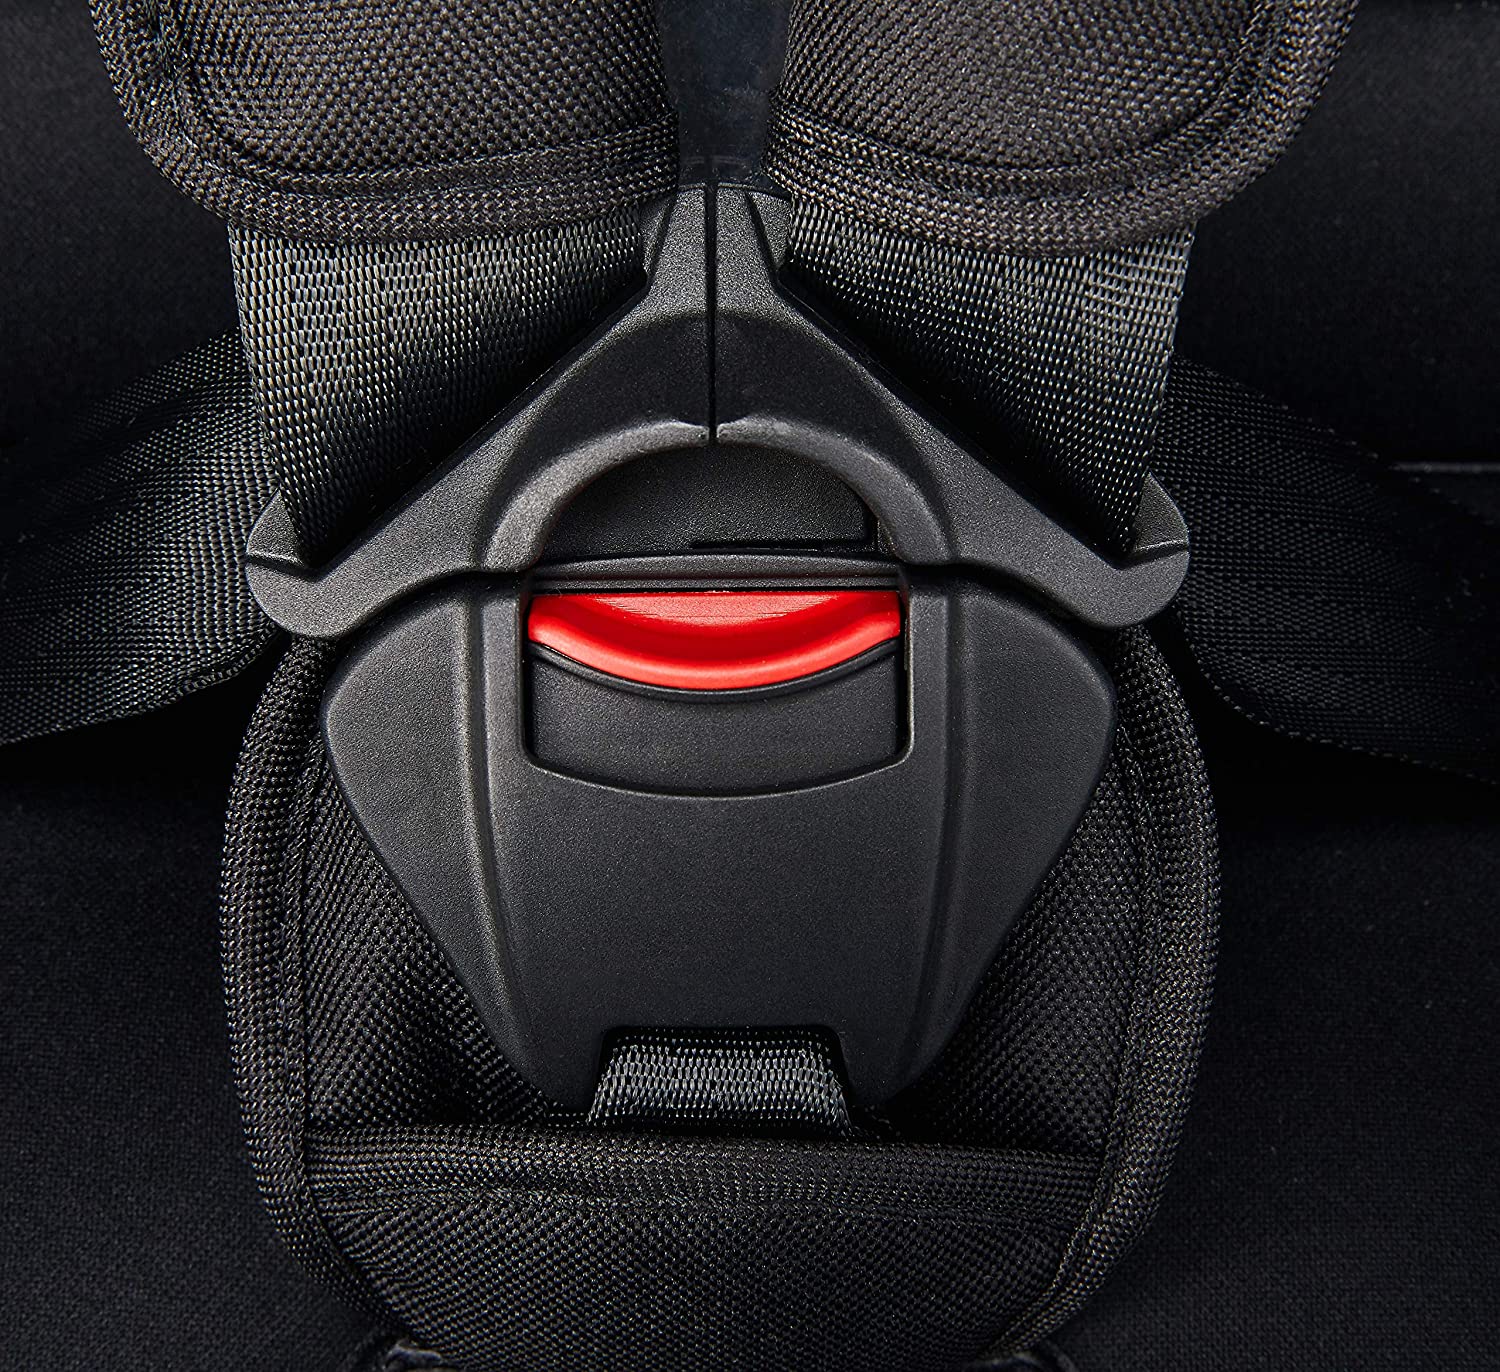 Maxi-Cosi Priori SPS Plus 8636253120 Child Car Seat – Black